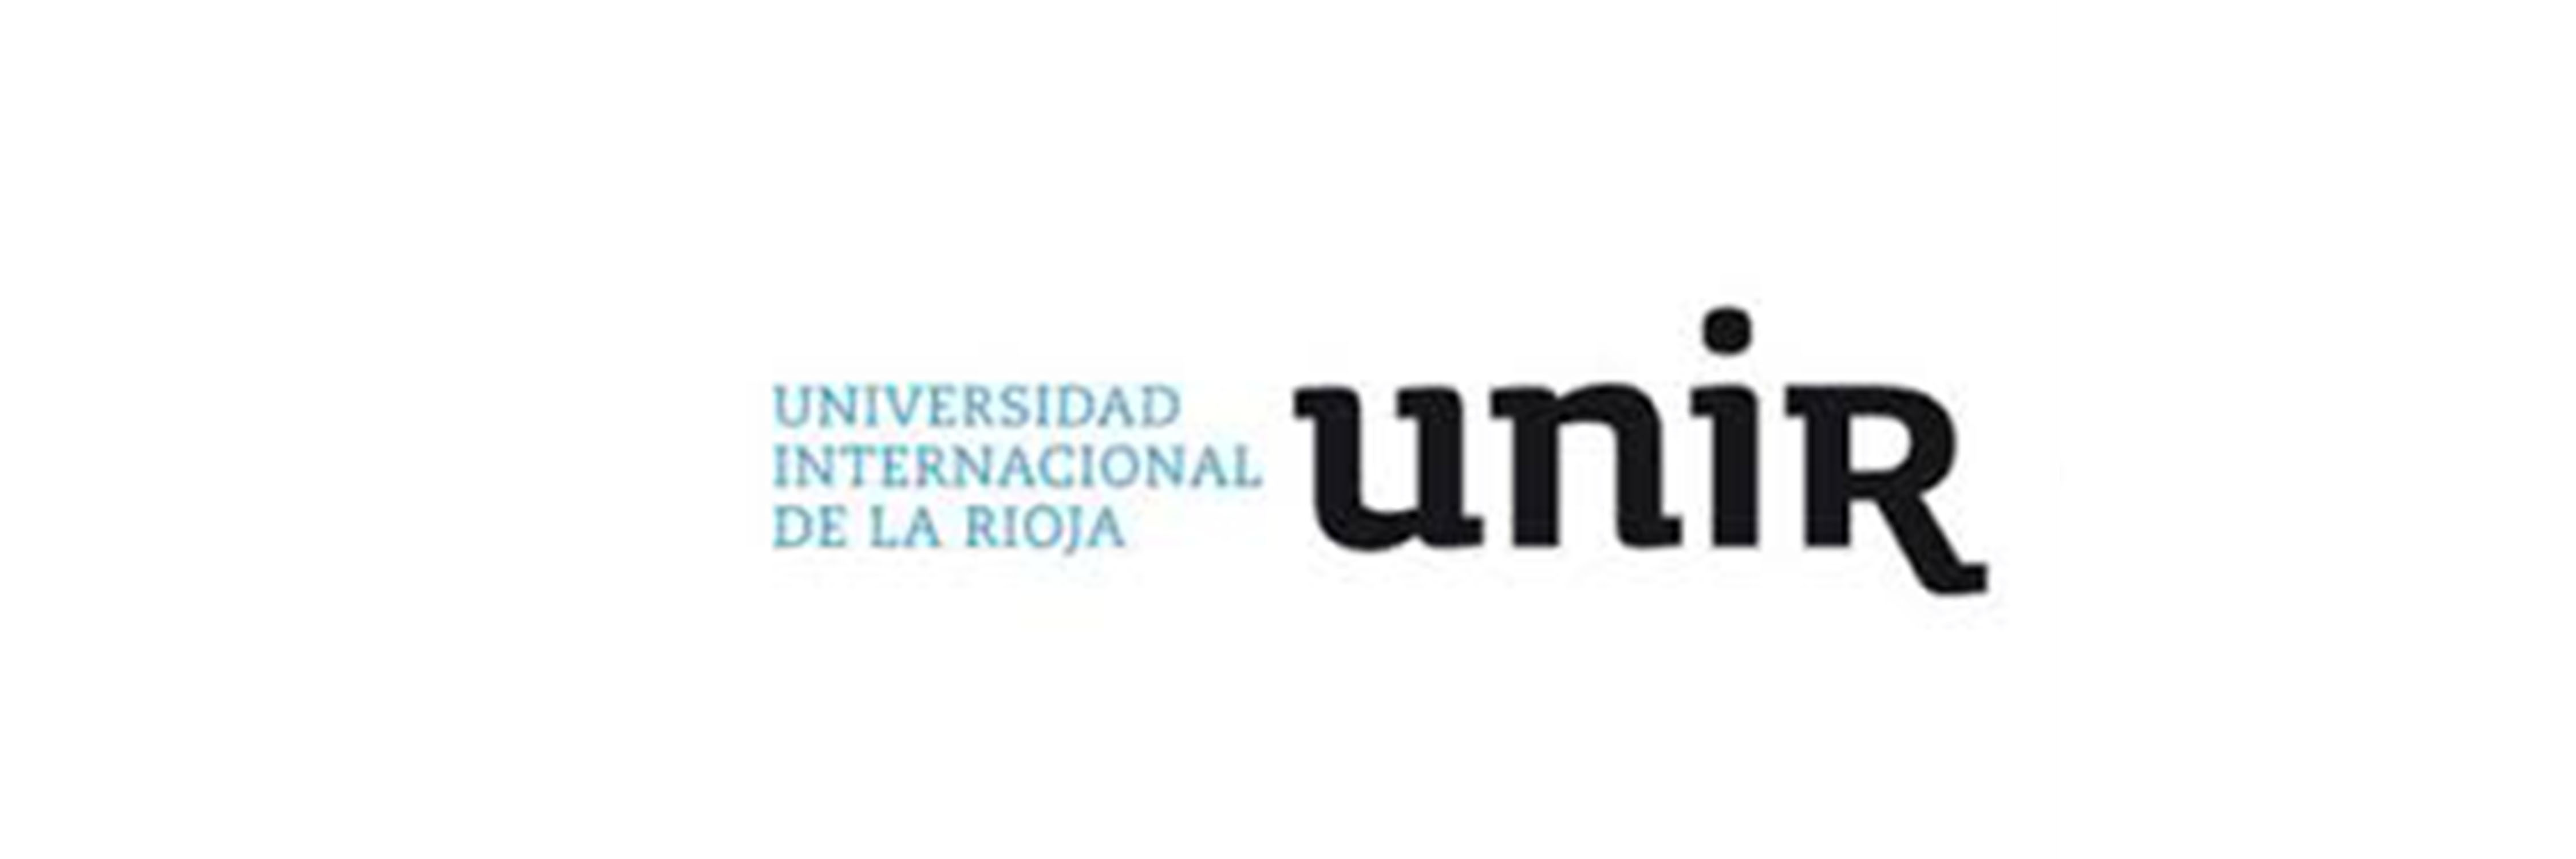 Universidad Unir